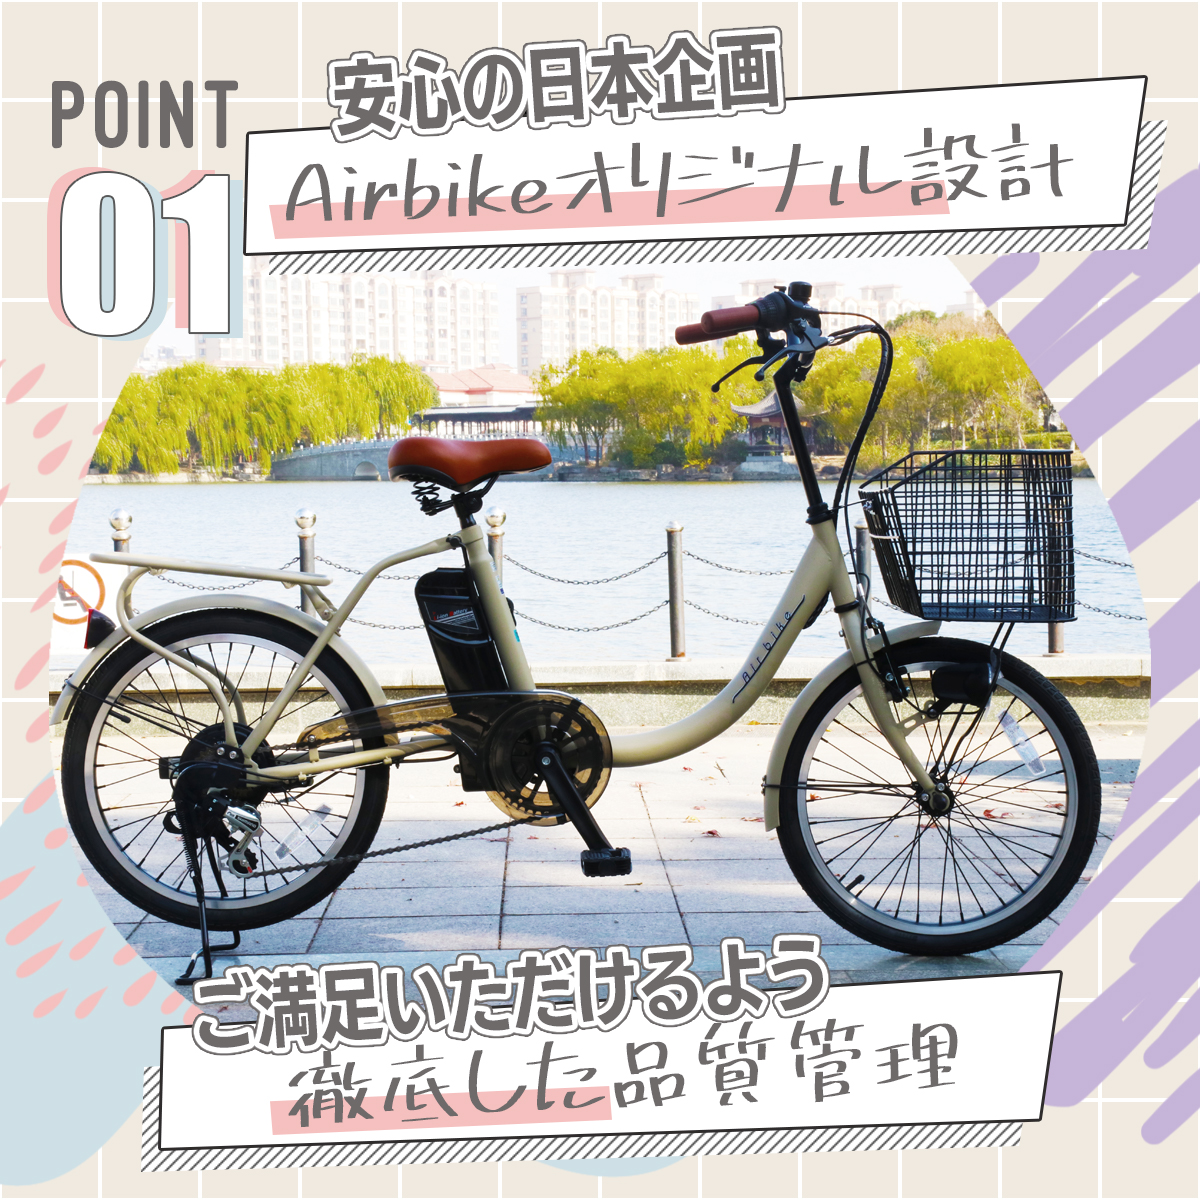 【今だけ先着30台特別価格】電動自転車 パナソニック Panasonic バッテリーセル搭載 20インチ 型式認定 Airbike  bicycle-212assist 電動アシスト自転車